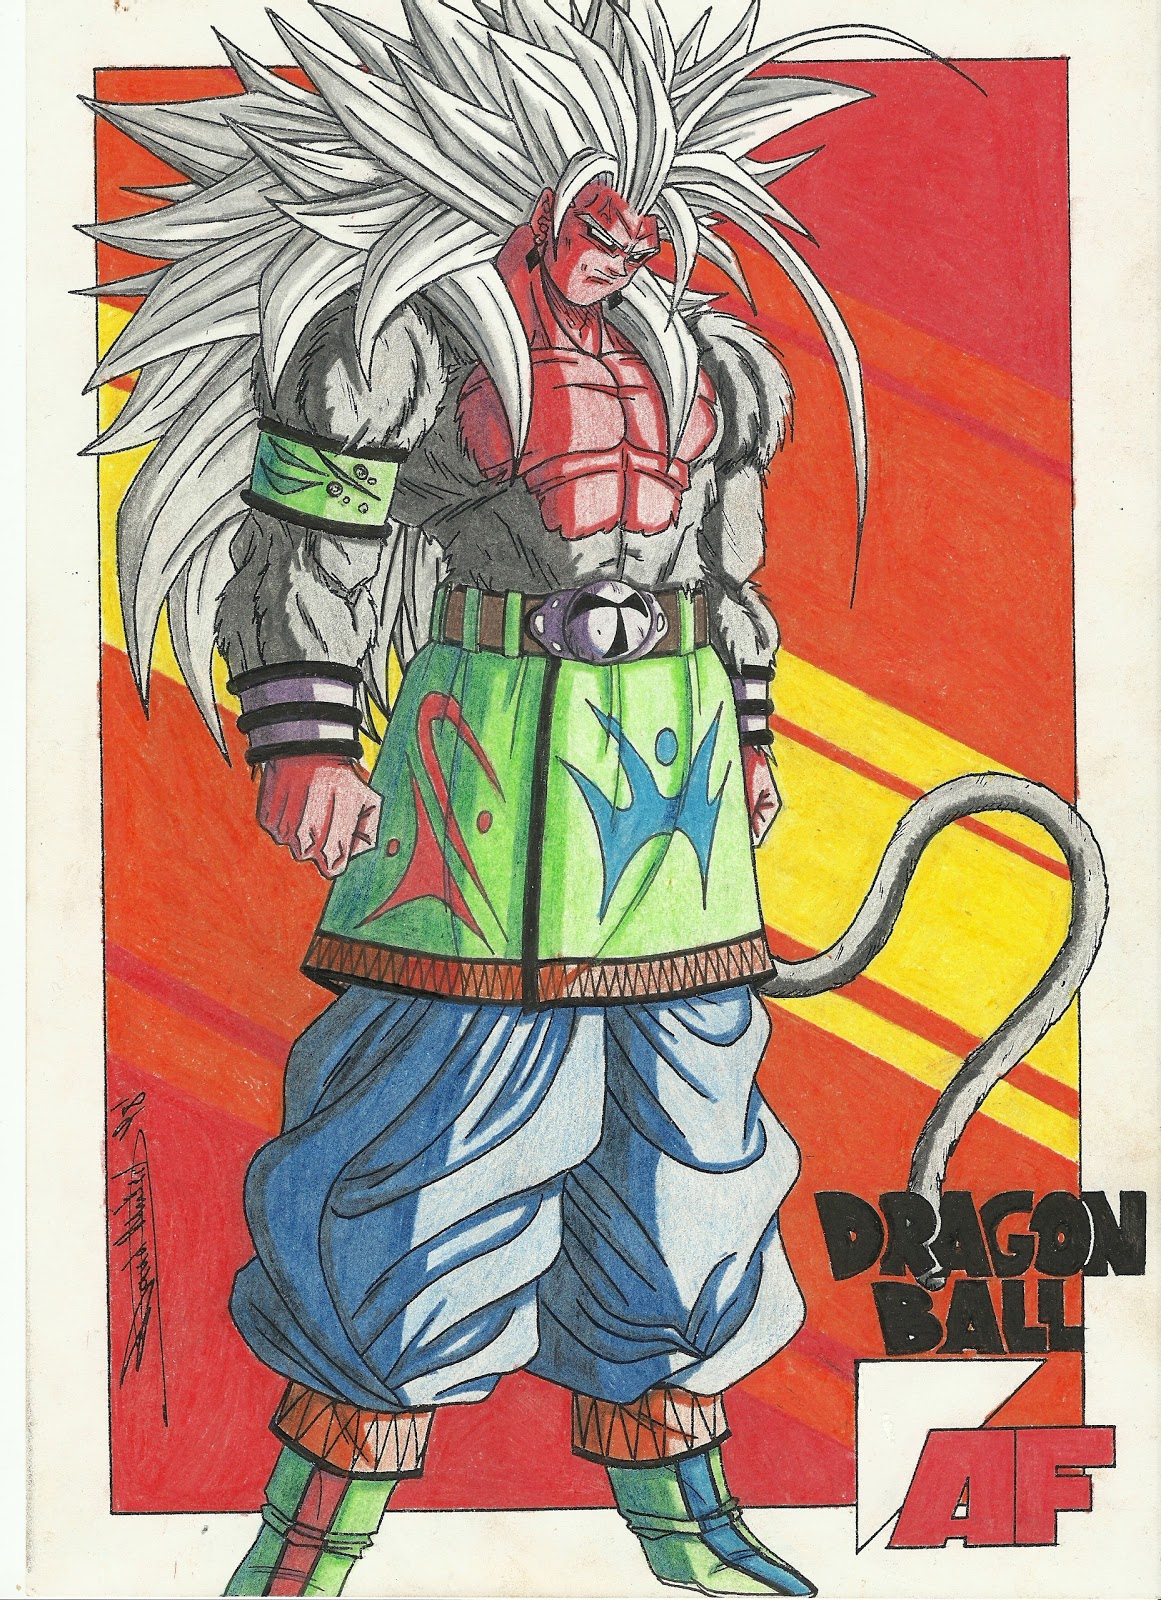 Carlos Desenhos: Dragon Ball Z Goku Ssj3  Goku desenho, Arte de dragão, Dragon  ball z